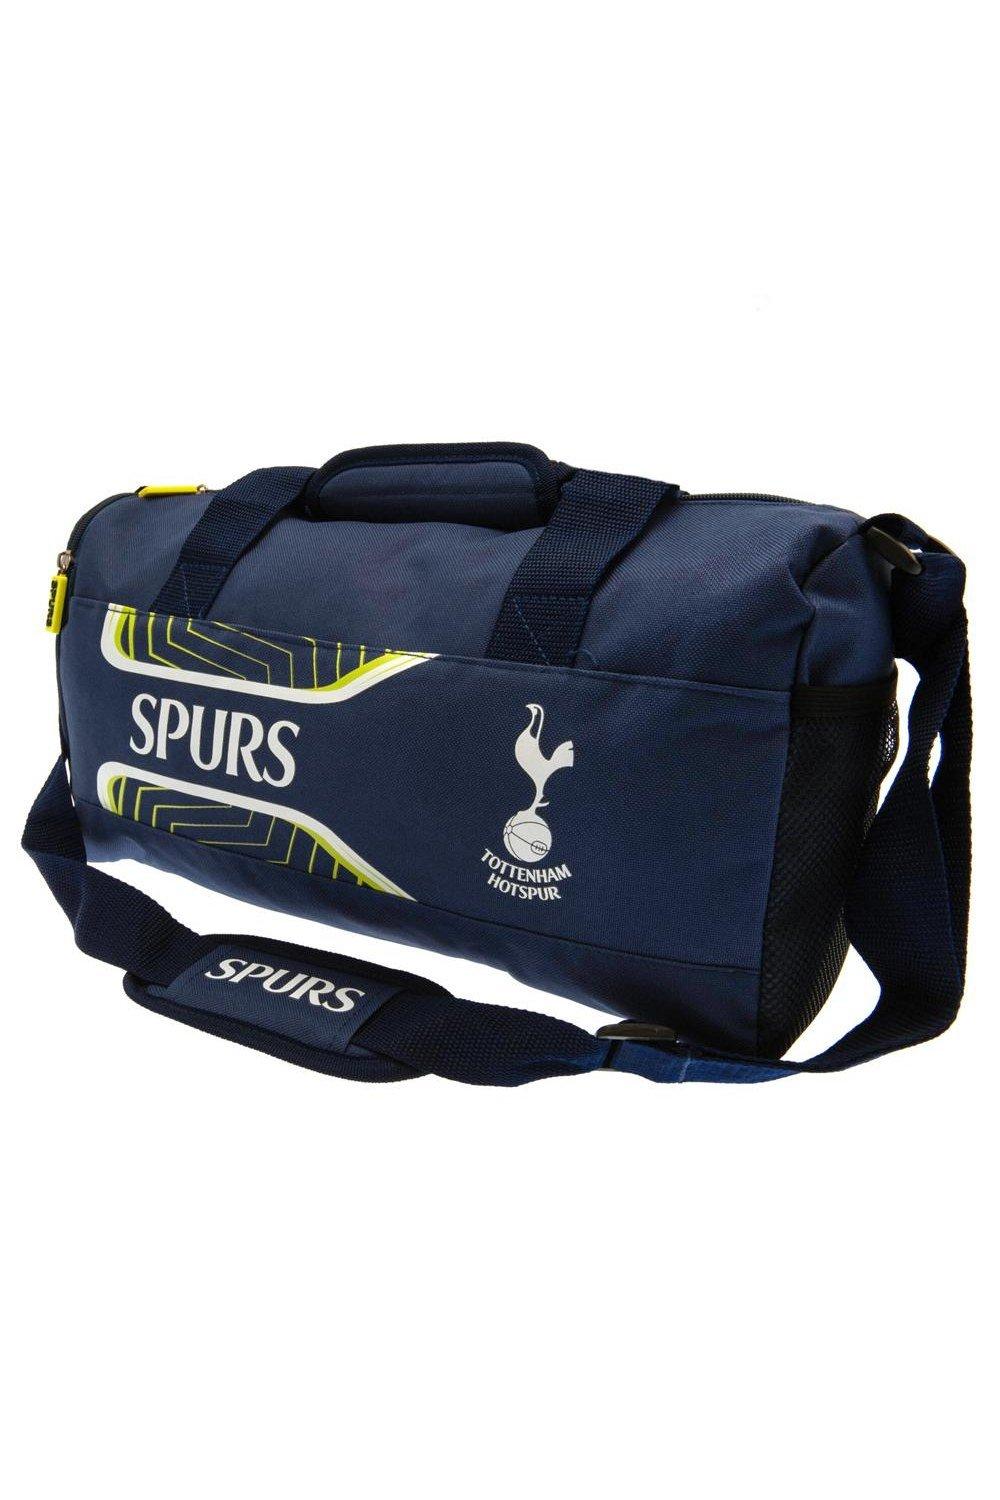 застежка молния для брюк и юбок длина 20см ширина 3 см Спортивная сумка Flash Tottenham Hotspur FC, темно-синий